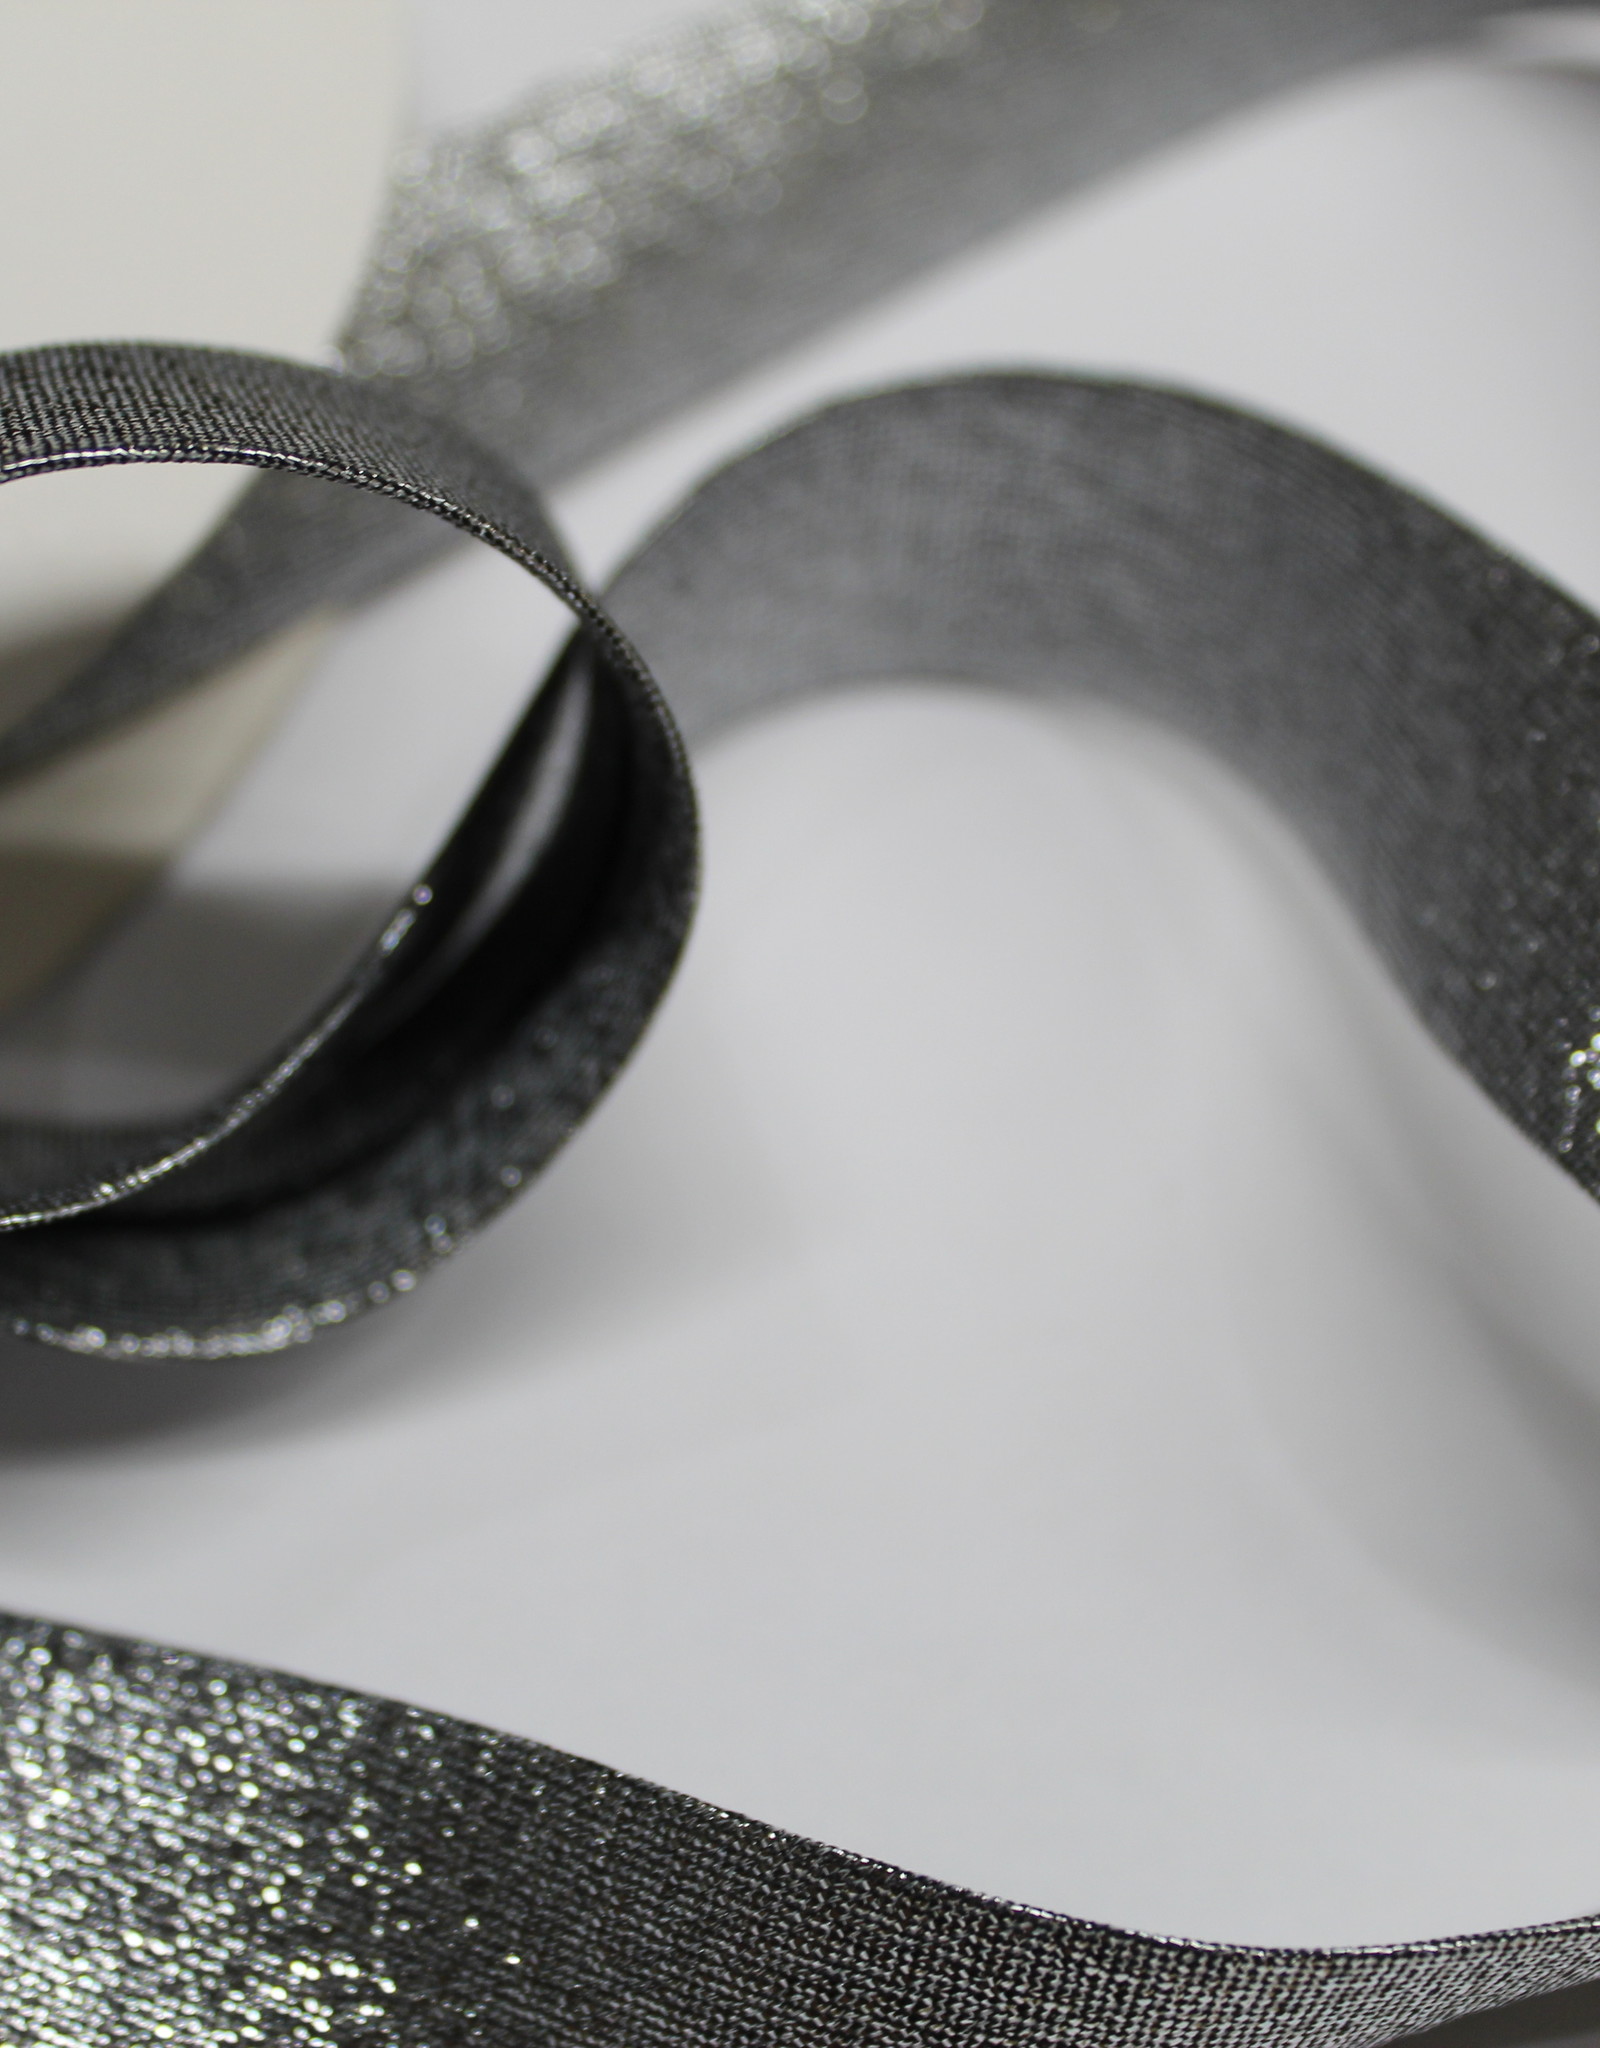 Biais metallic glitter 18mm op rol zwart zilver